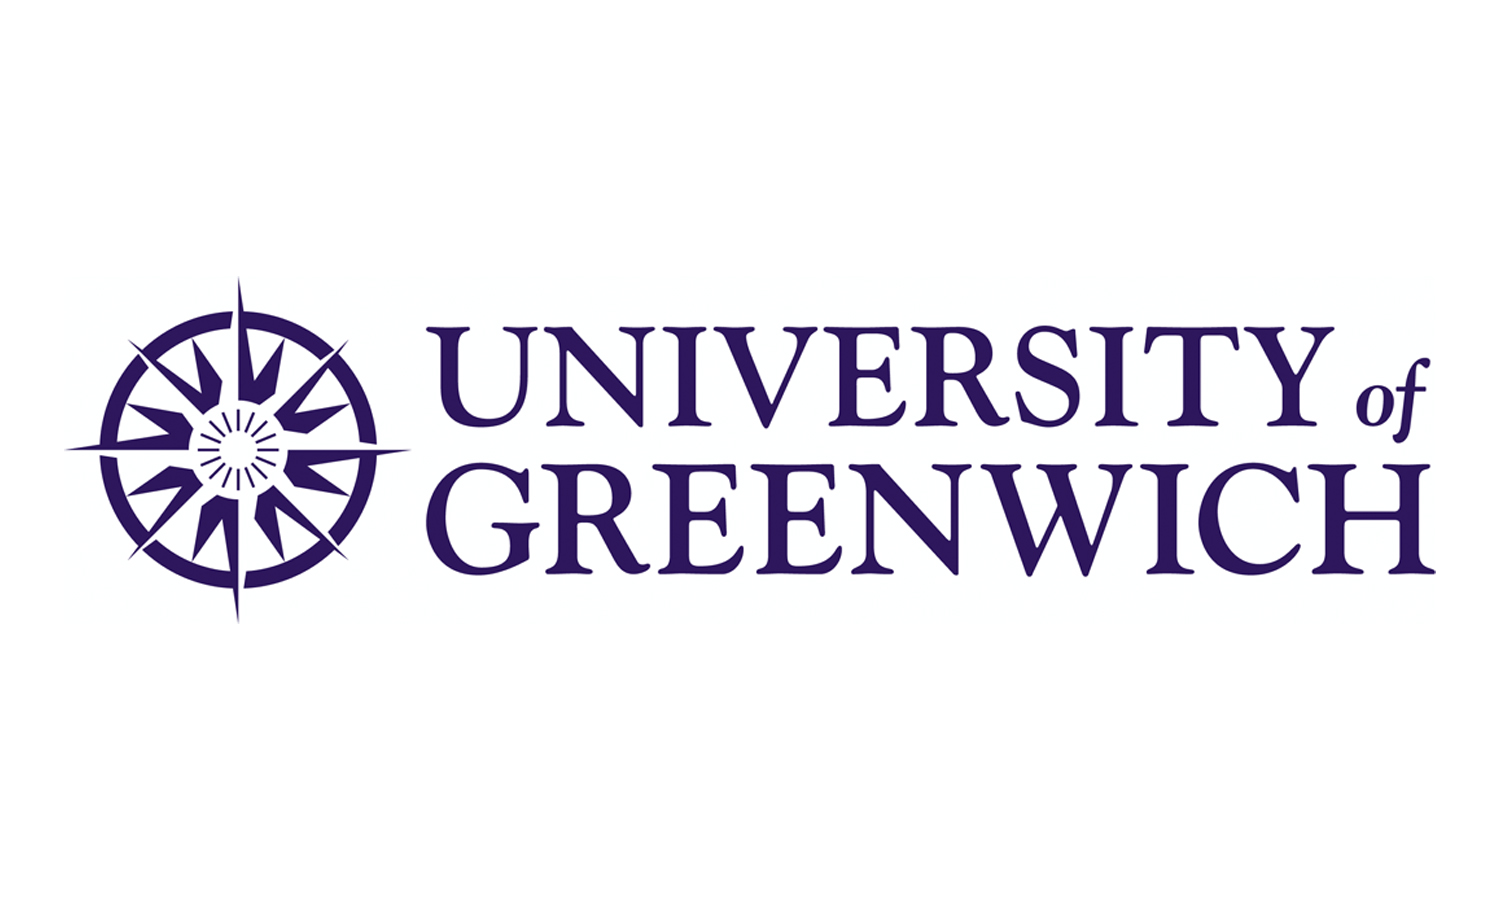 University of Greenwich | University Alliance